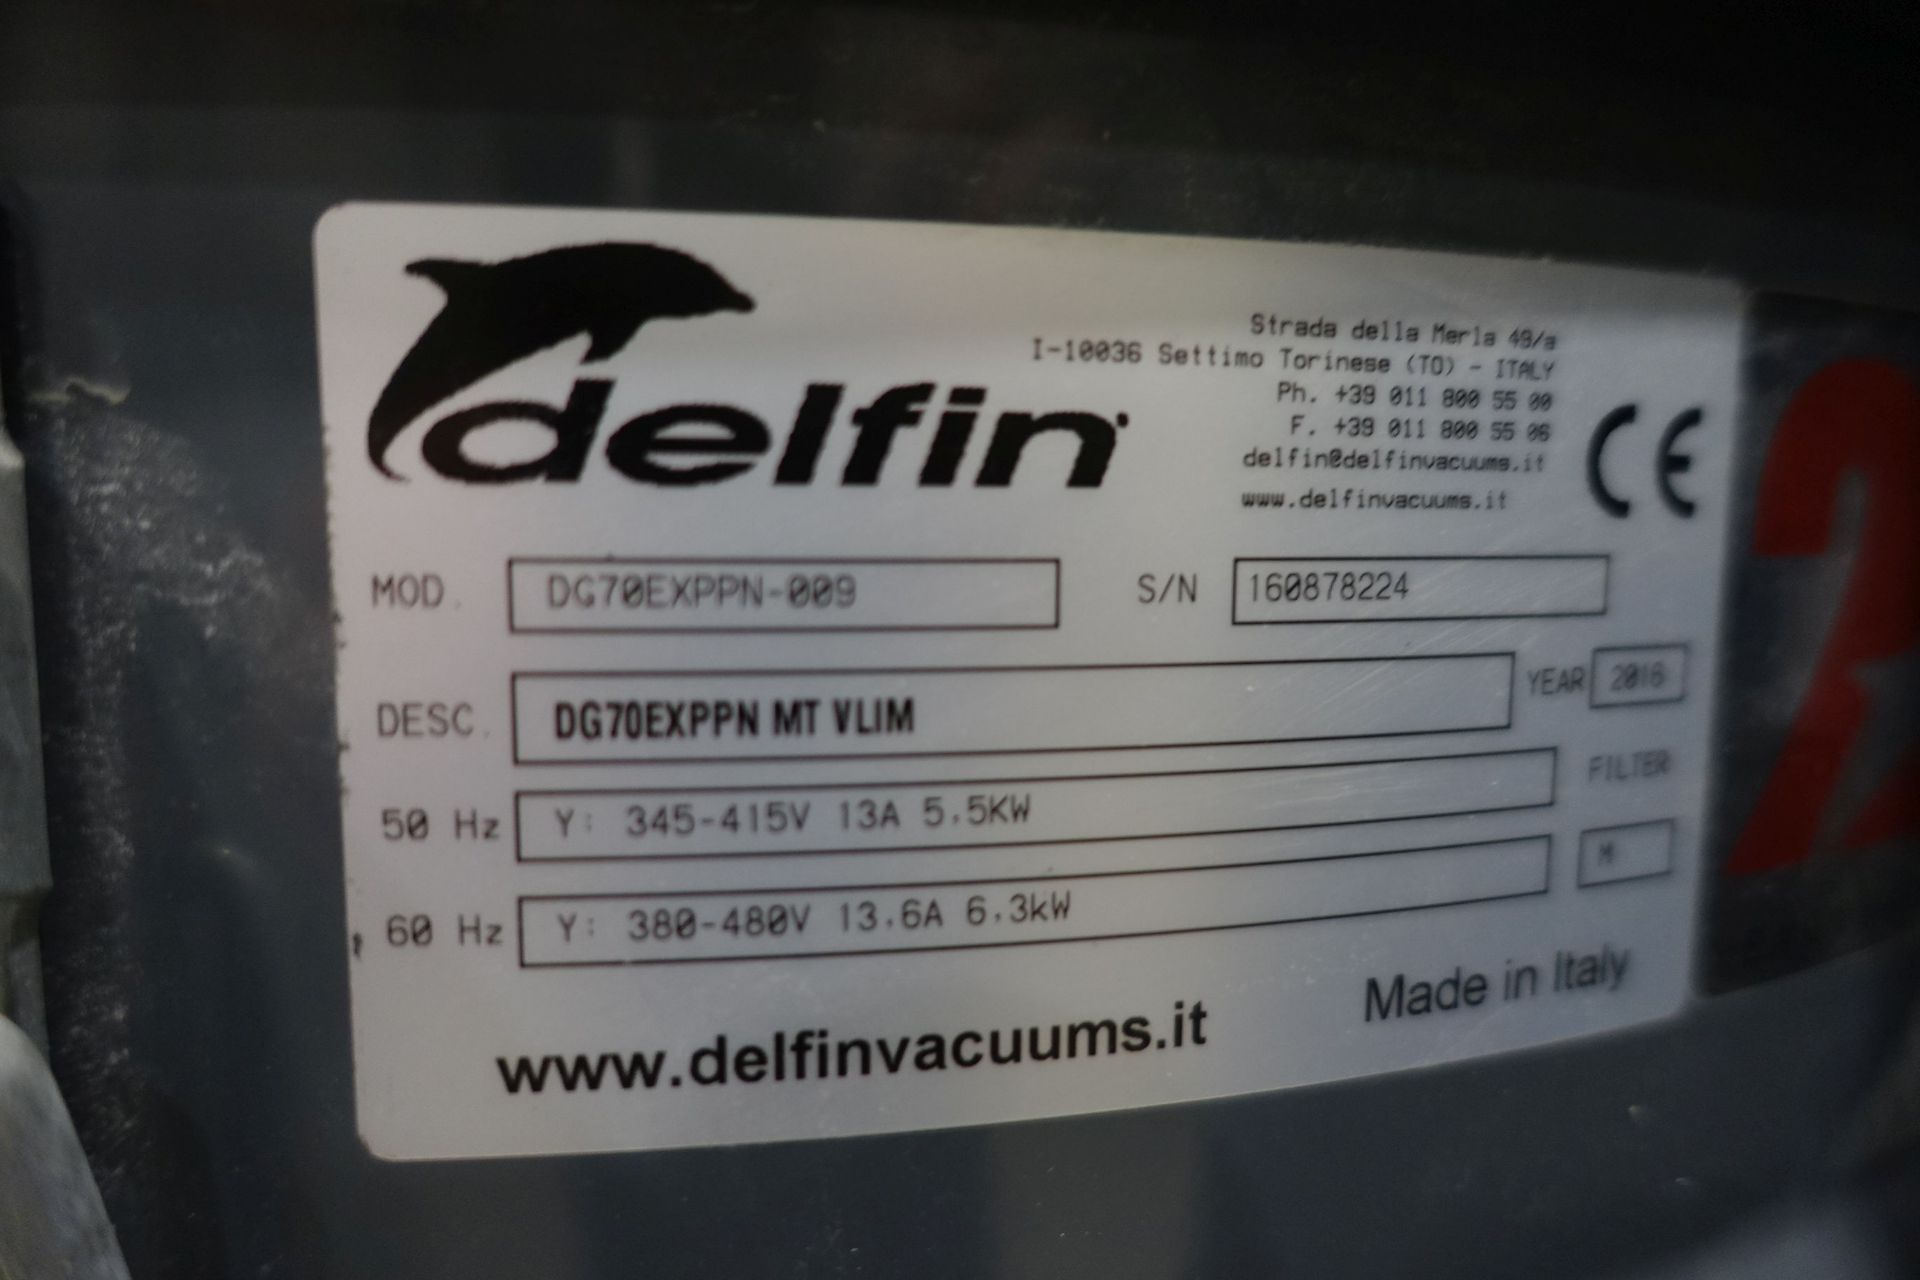 DELFIN DG70EXPPN Industrial Vaccum Cleaner (2016), Ser # 160878224, Asset # 2000033 - Image 12 of 13